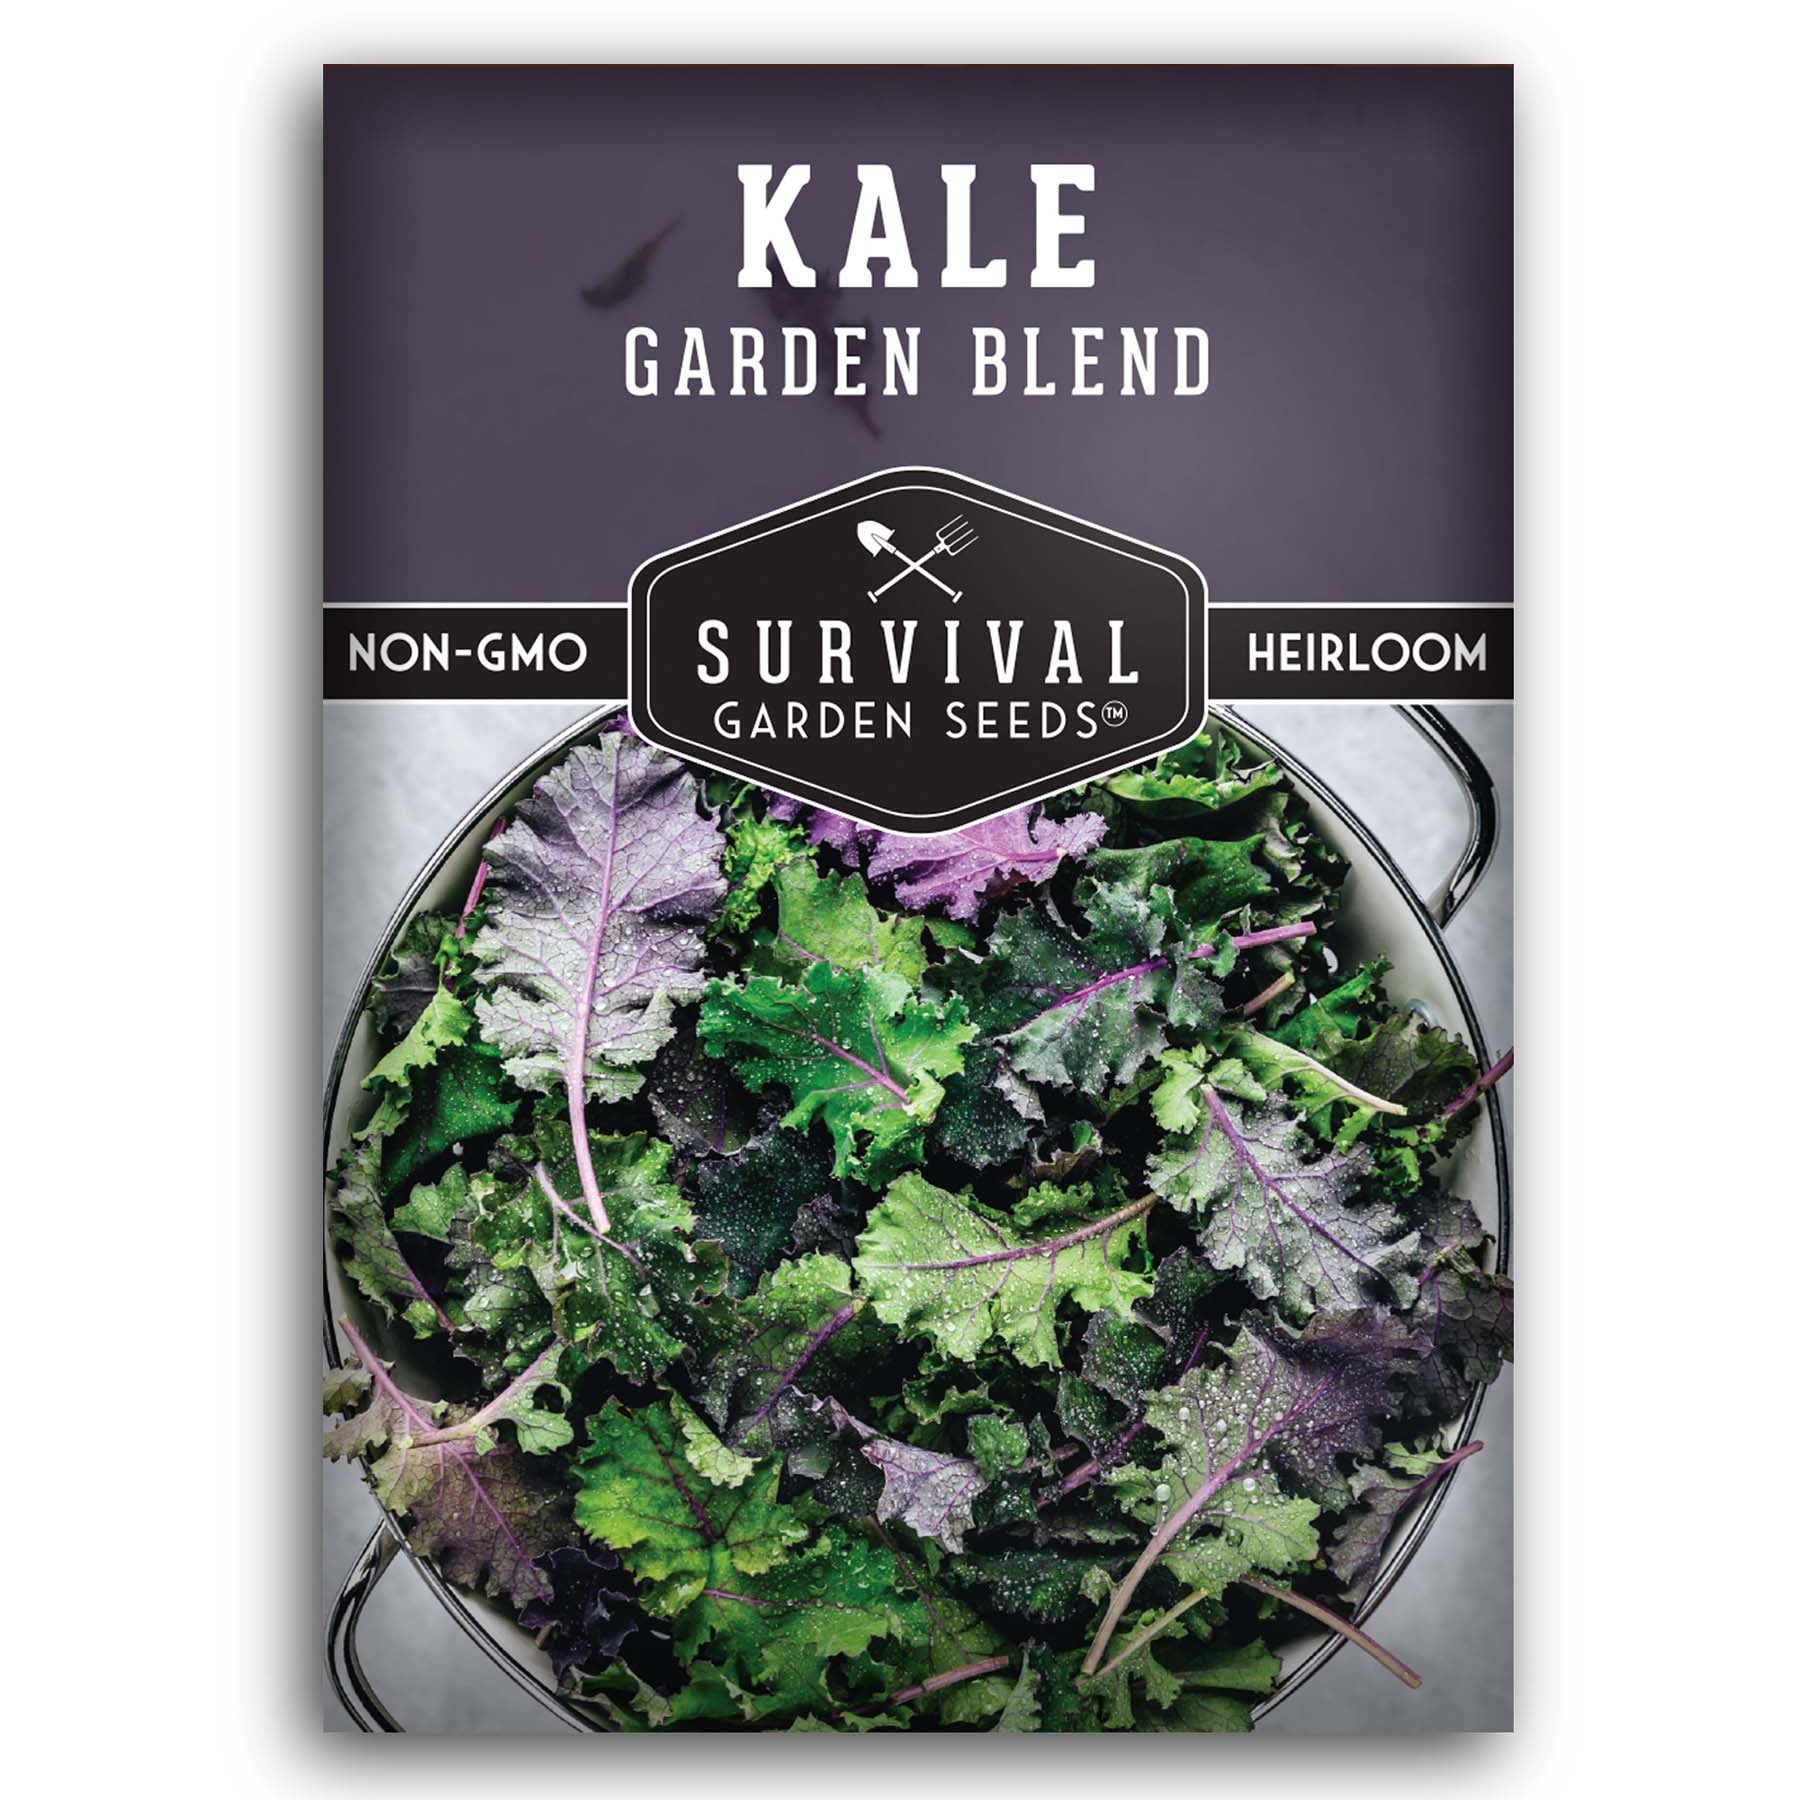 Garden Blend Kale seeds for planting